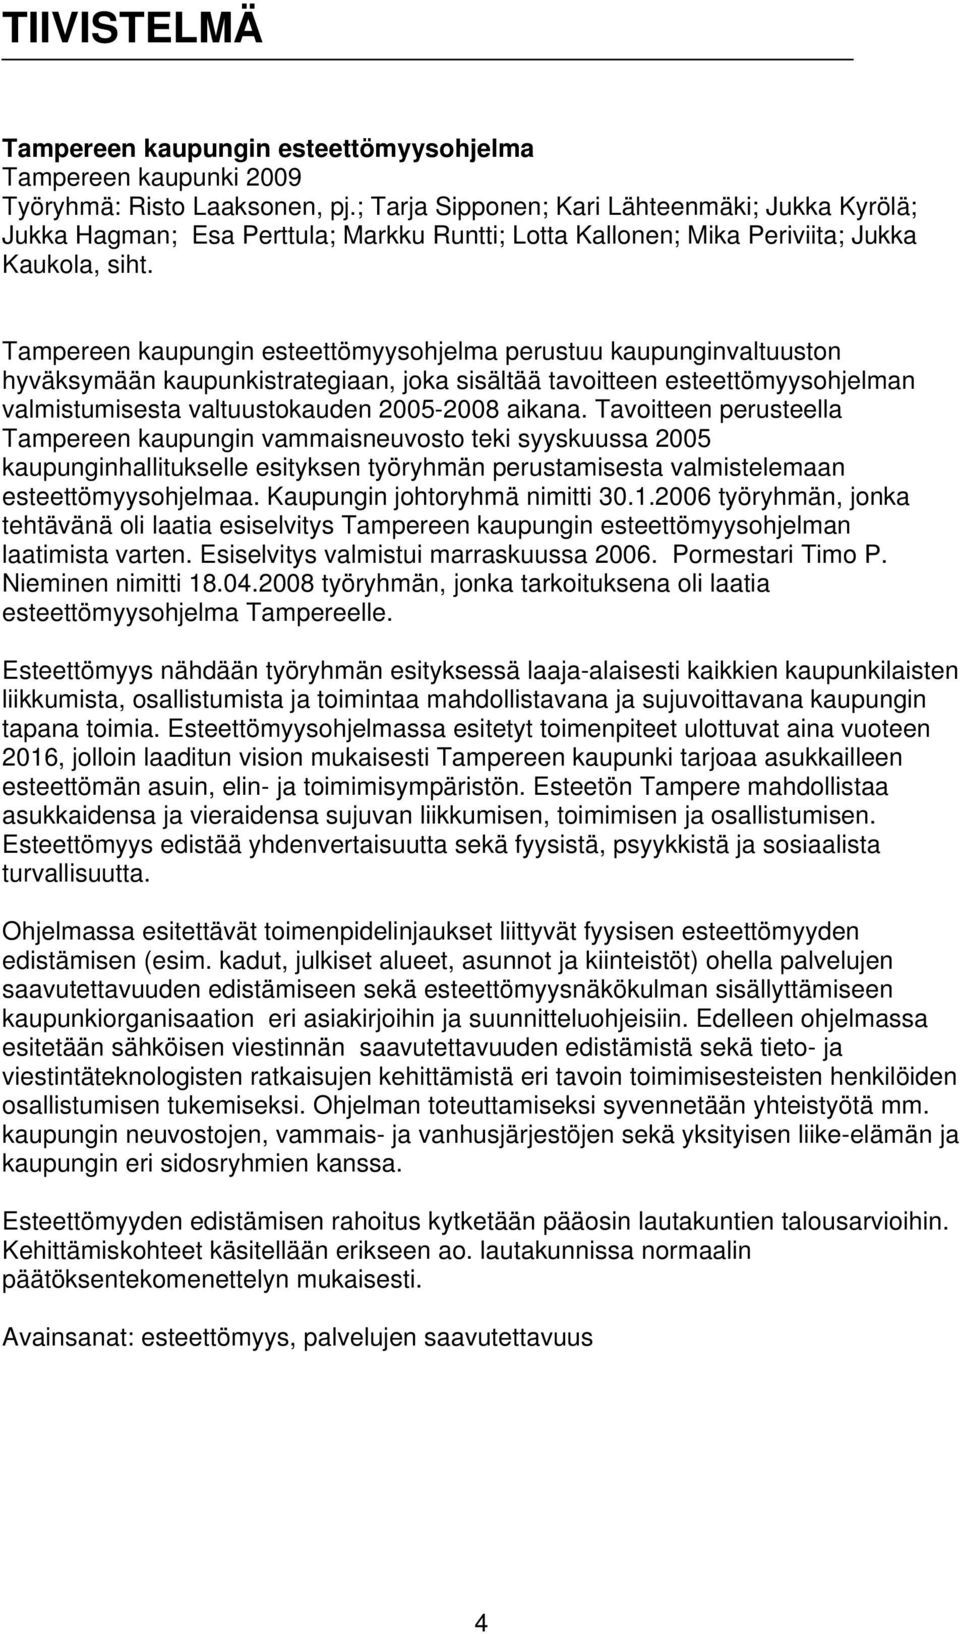 Tampereen kaupungin esteettömyysohjelma perustuu kaupunginvaltuuston hyväksymään kaupunkistrategiaan, joka sisältää tavoitteen esteettömyysohjelman valmistumisesta valtuustokauden 2005-2008 aikana.